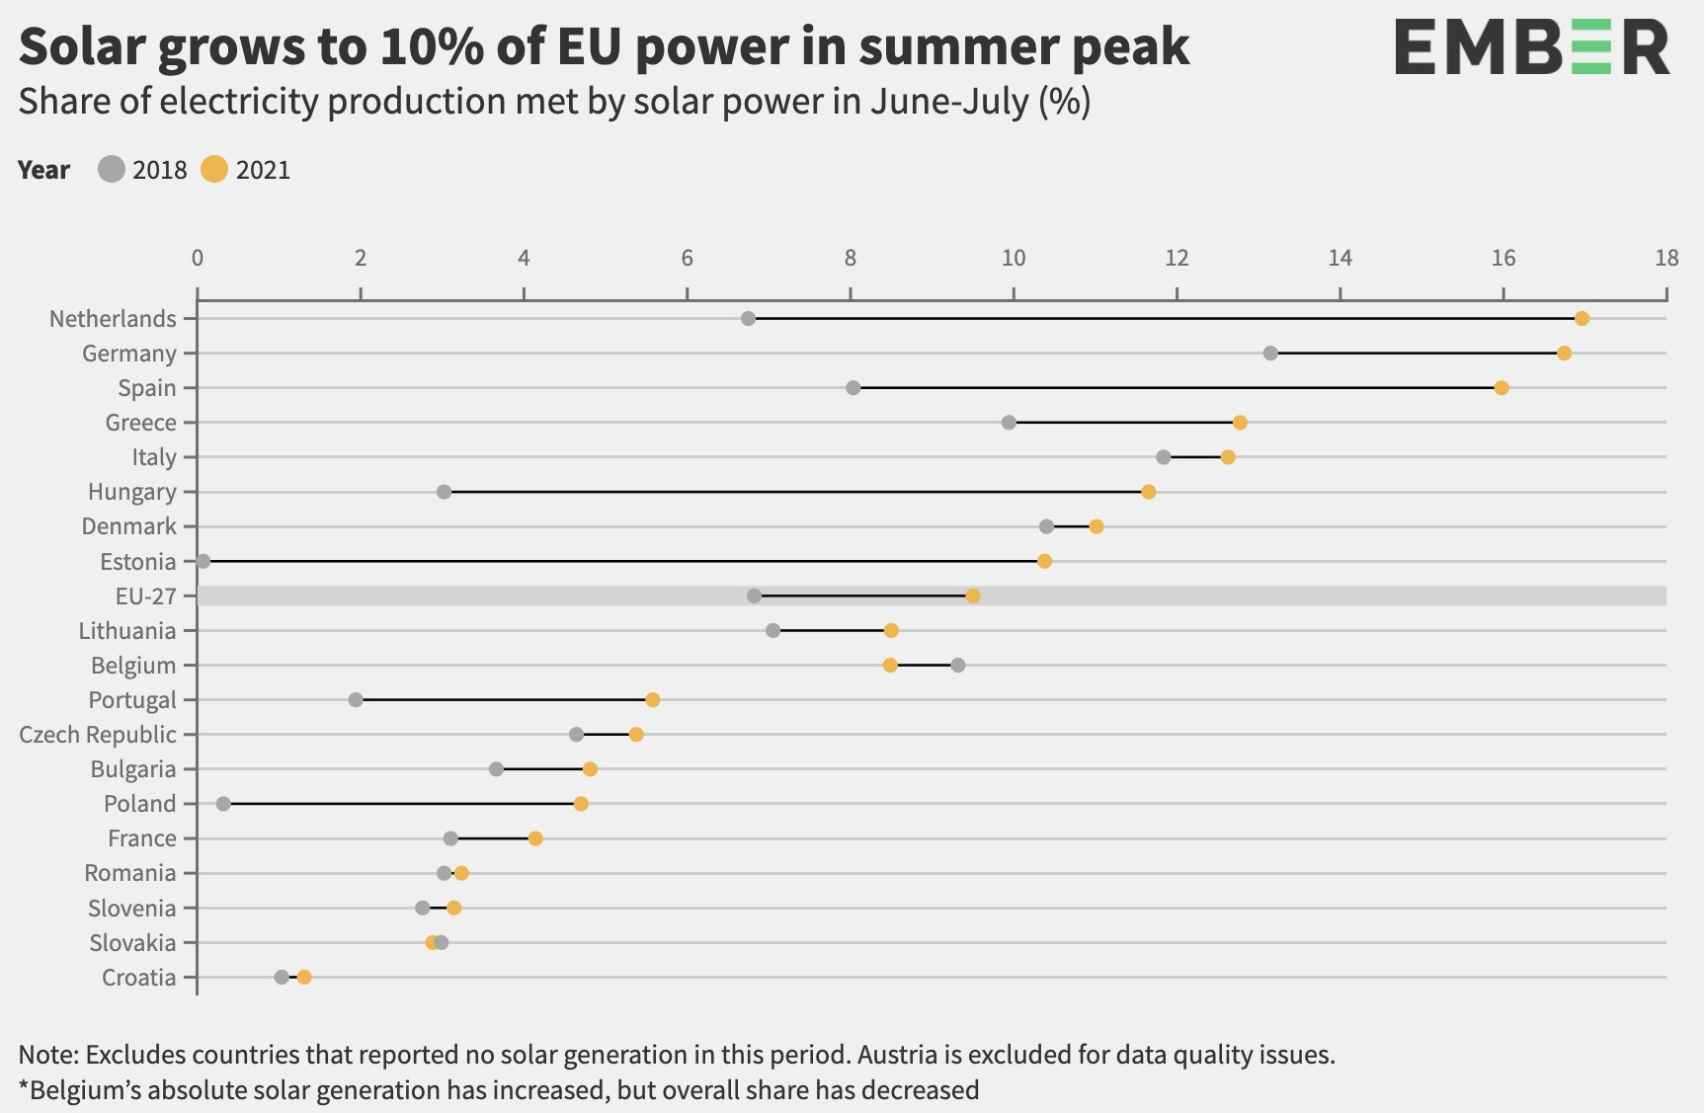 Crecimiento de la solar fotovoltaica en la UE-27 según un infome de Ember. Fuente- Ember